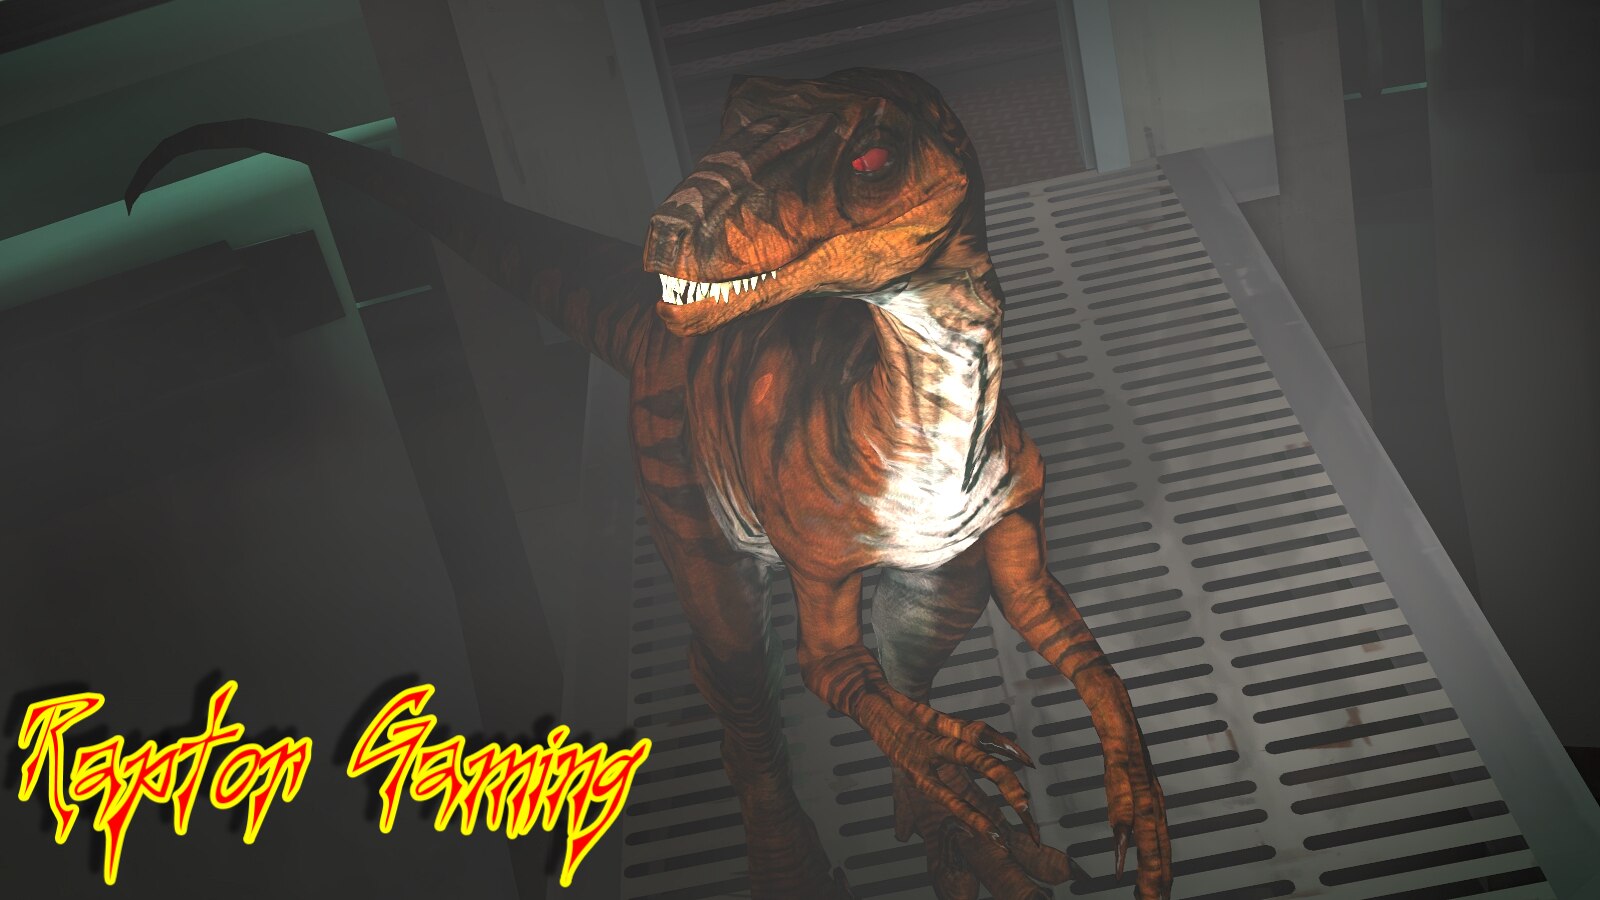 Shadow Freddy Photoshop (Fnaf Movie) by Jurassicworldcards on